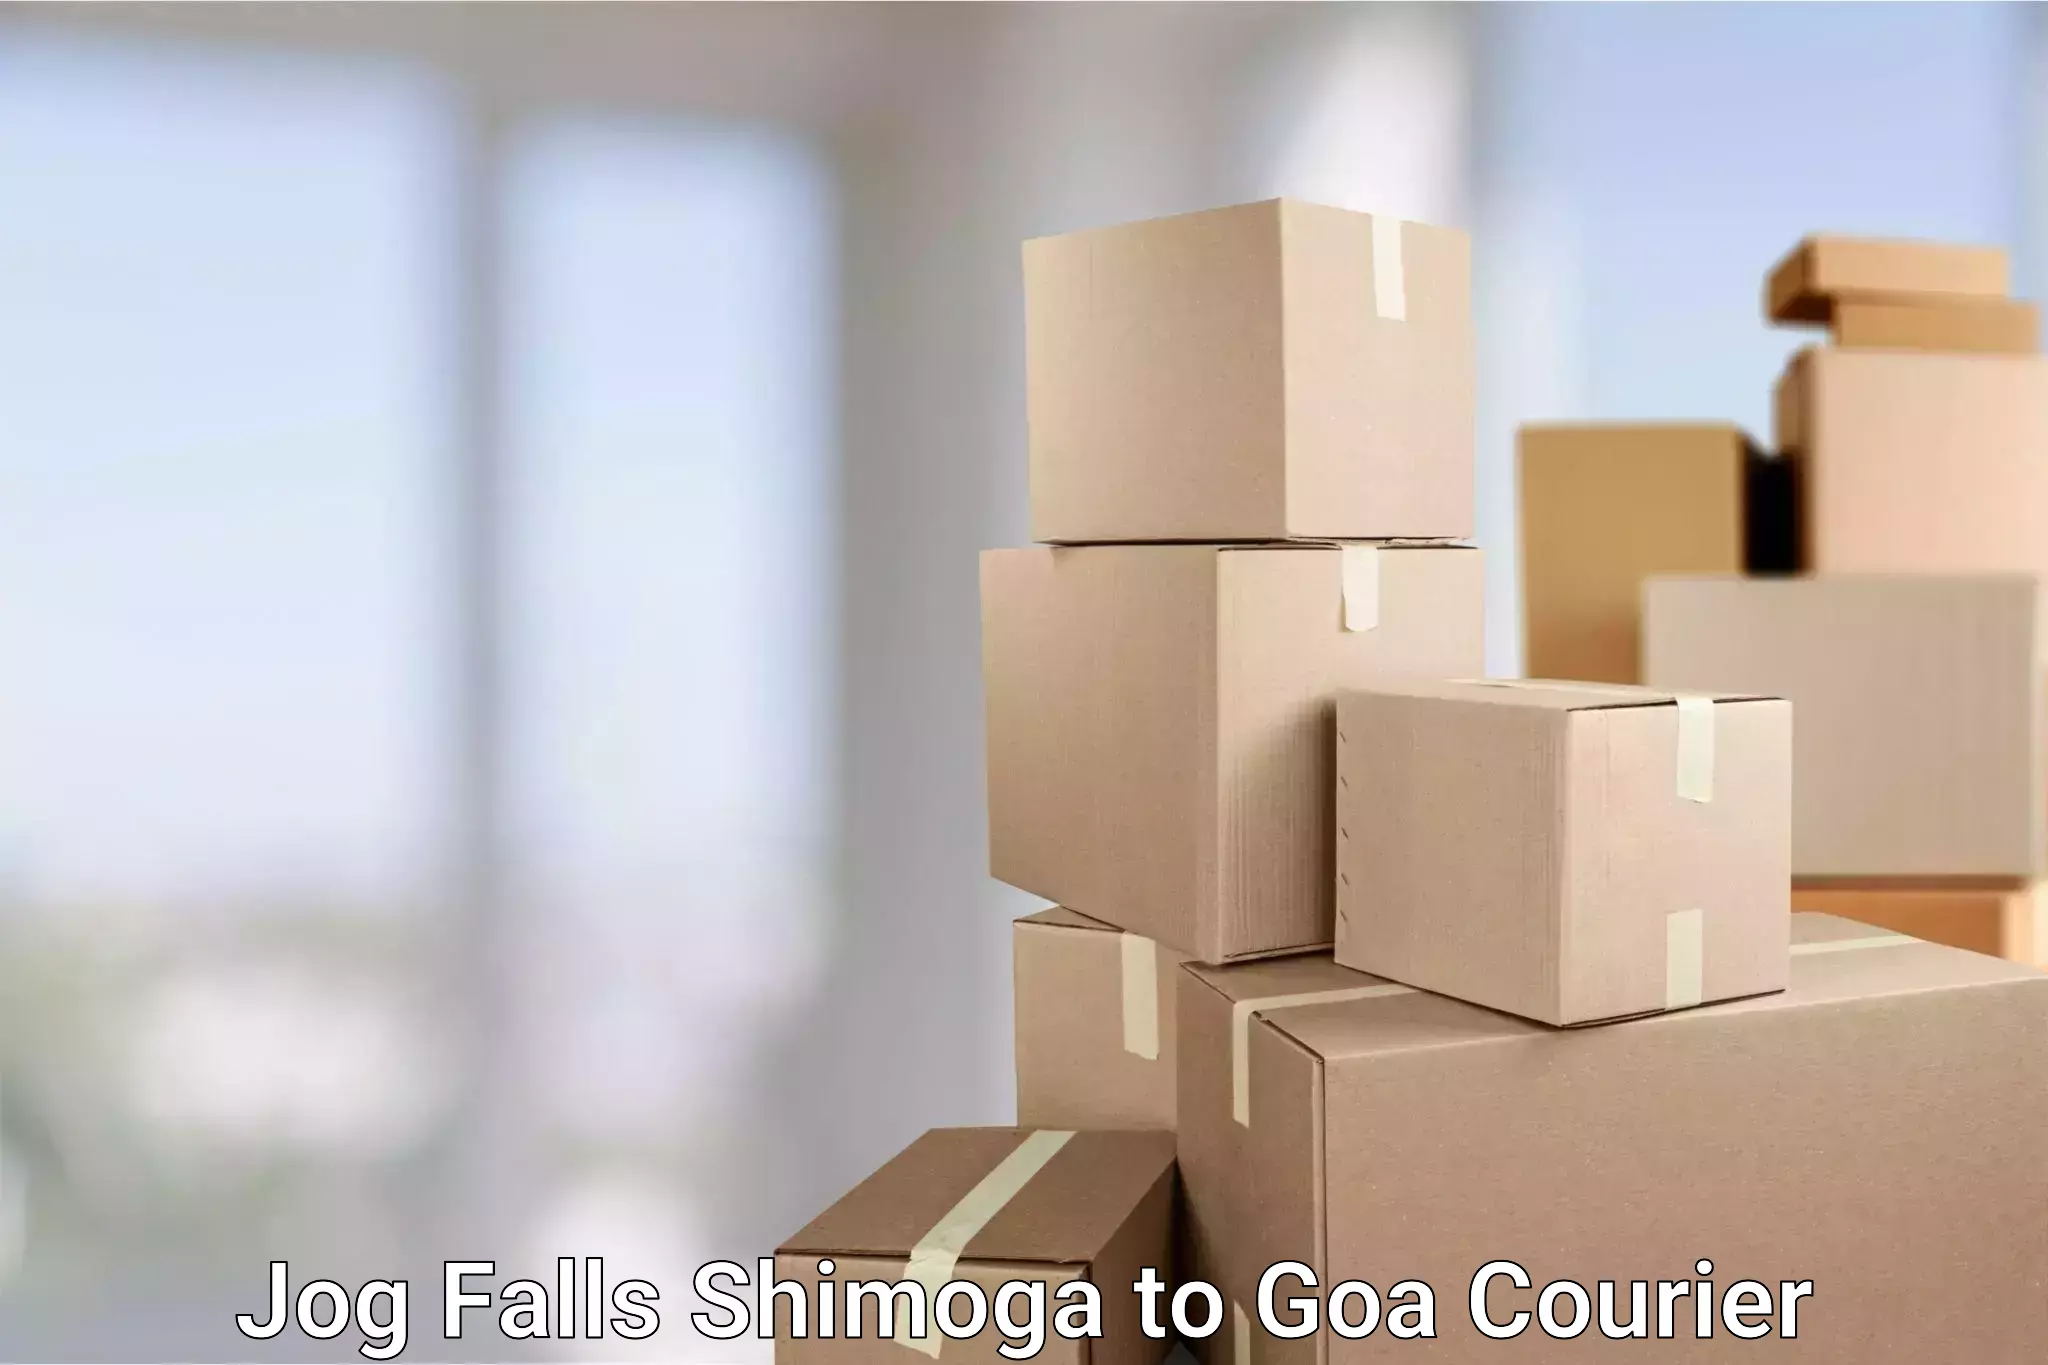 Global parcel delivery Jog Falls Shimoga to Goa